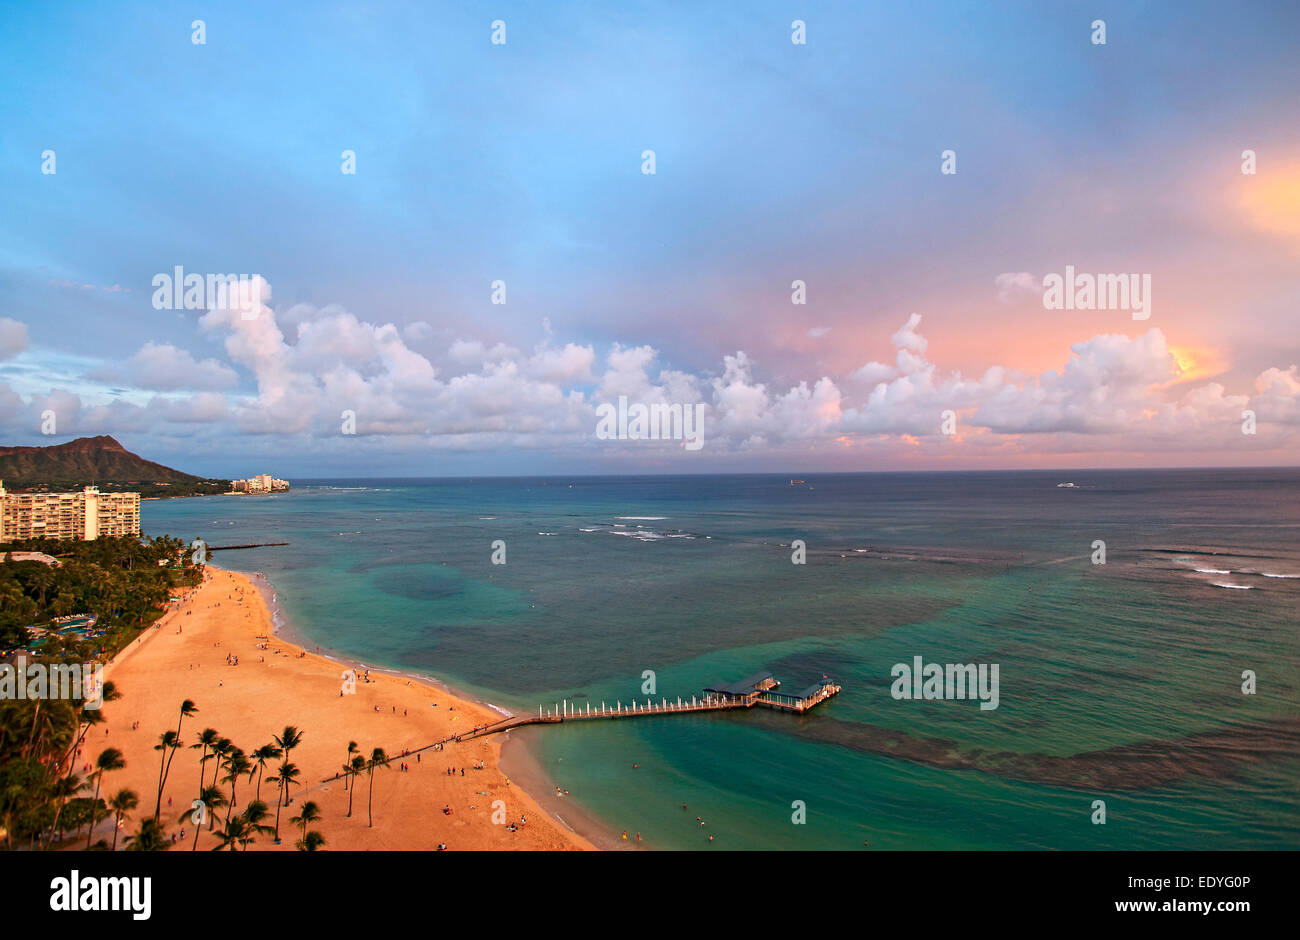 Vista de Waikiki desde una habitación en el Hilton Hawaiian Village Foto de stock